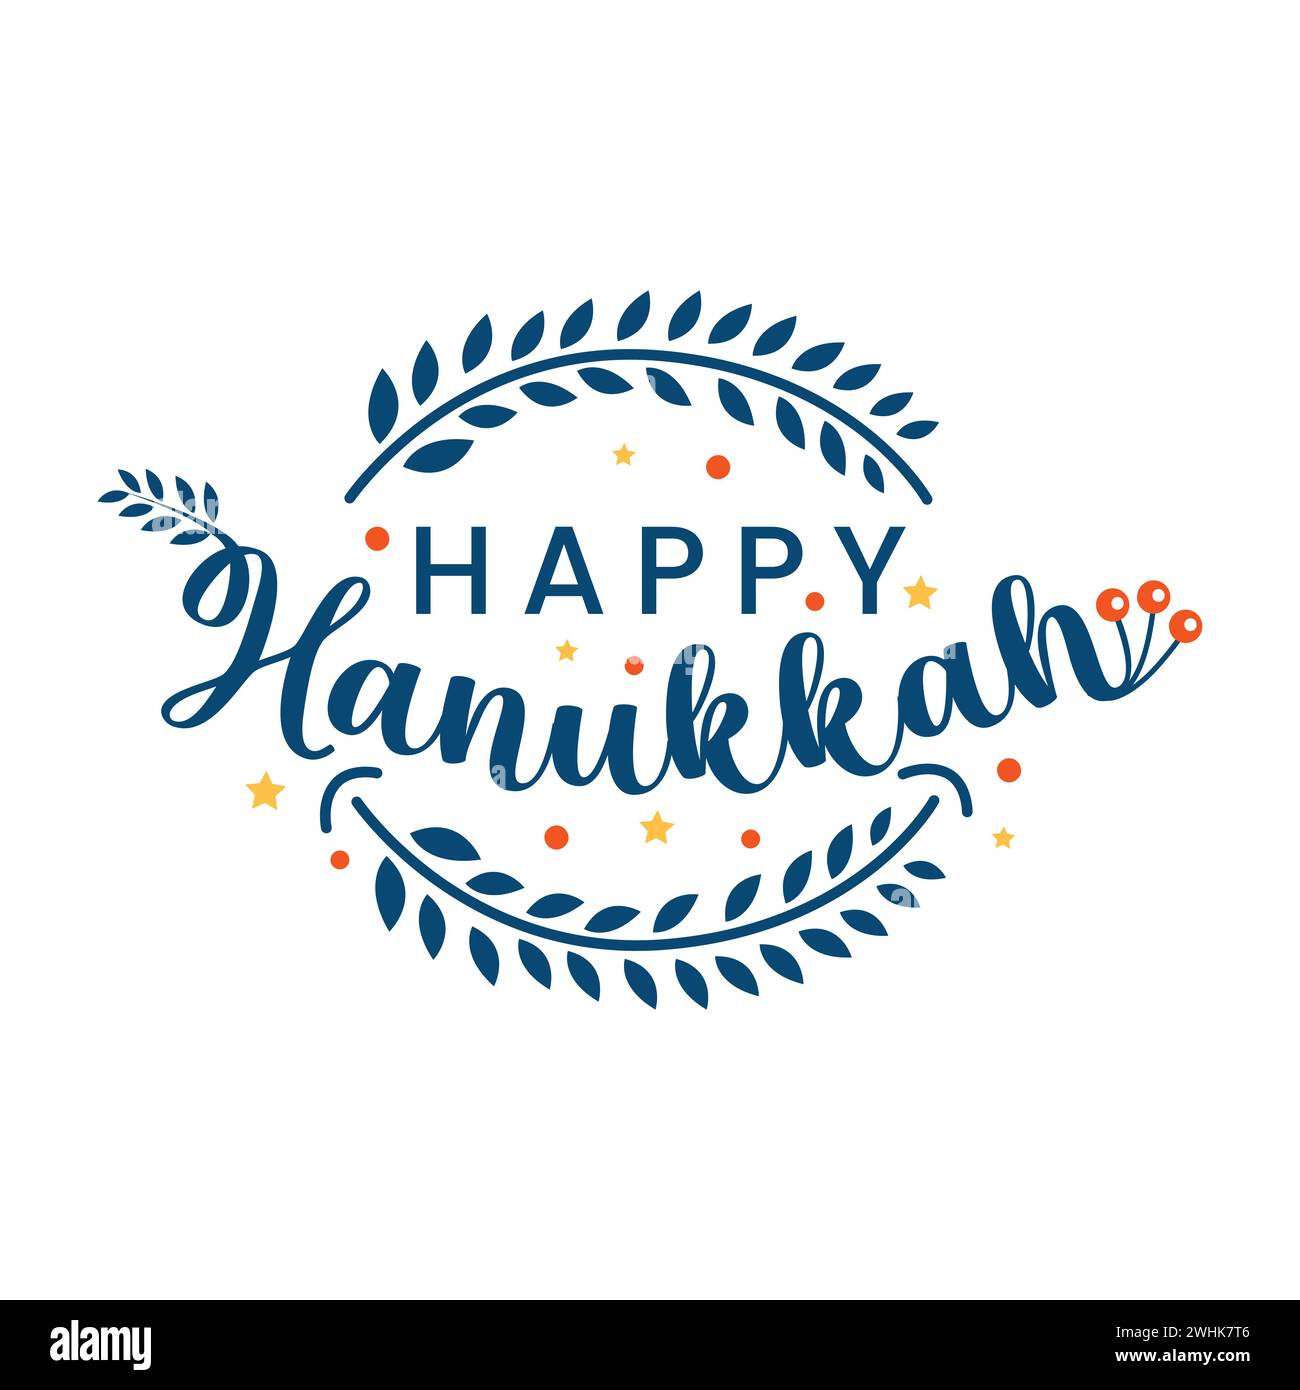 Glückliche Hanukkah Vektor-Illustration mit floralen Elementen. Hanukkah handgezeichnete Typografie und Grußkarte mit Schriftzügen. Happy Hanukkah auf Hebräisch Stock Vektor